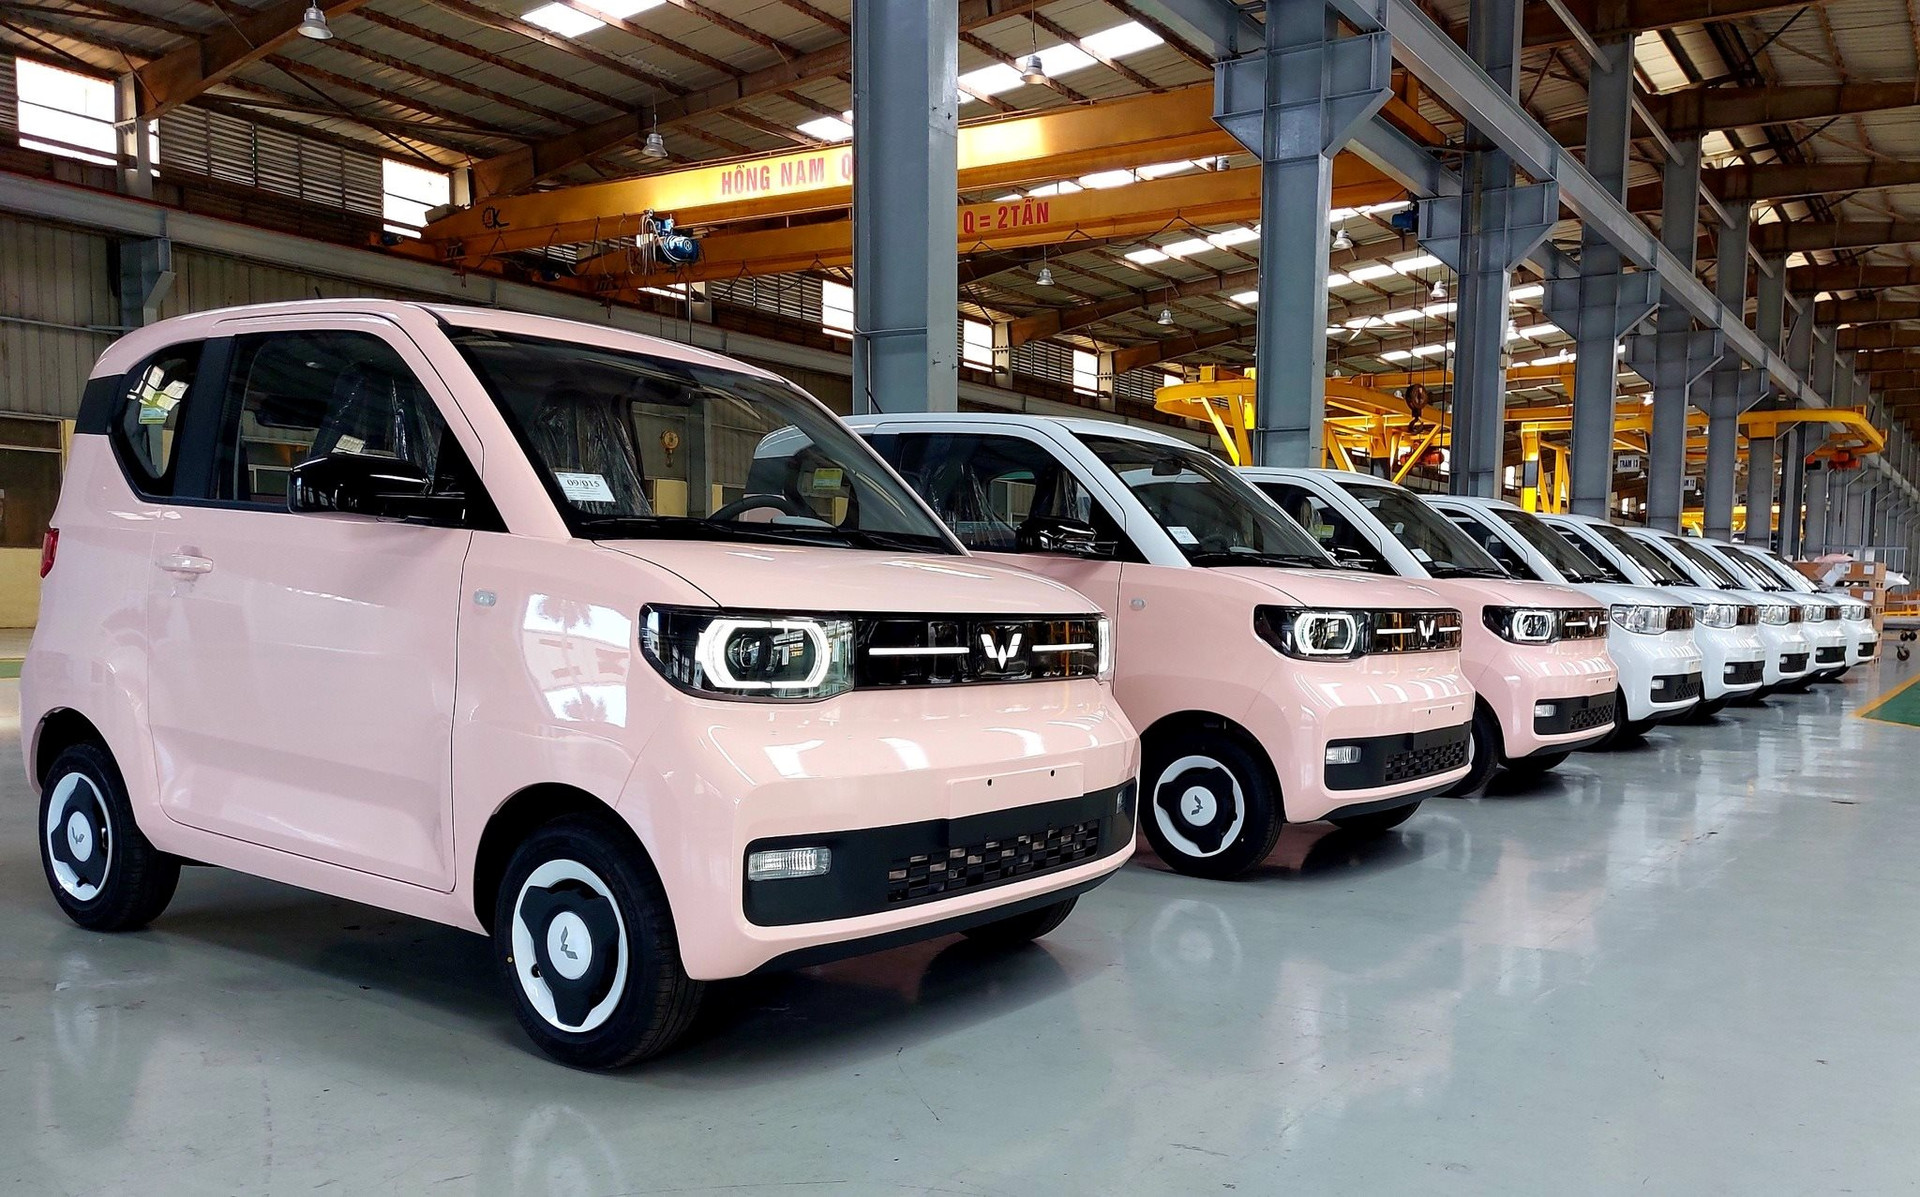 Lộ diện dàn xe điện HongGuang MiniEV chuẩn bị bàn giao cho khách: Chủ yếu 2 màu hồng, trắng; giá từ 239-279 triệu đồng